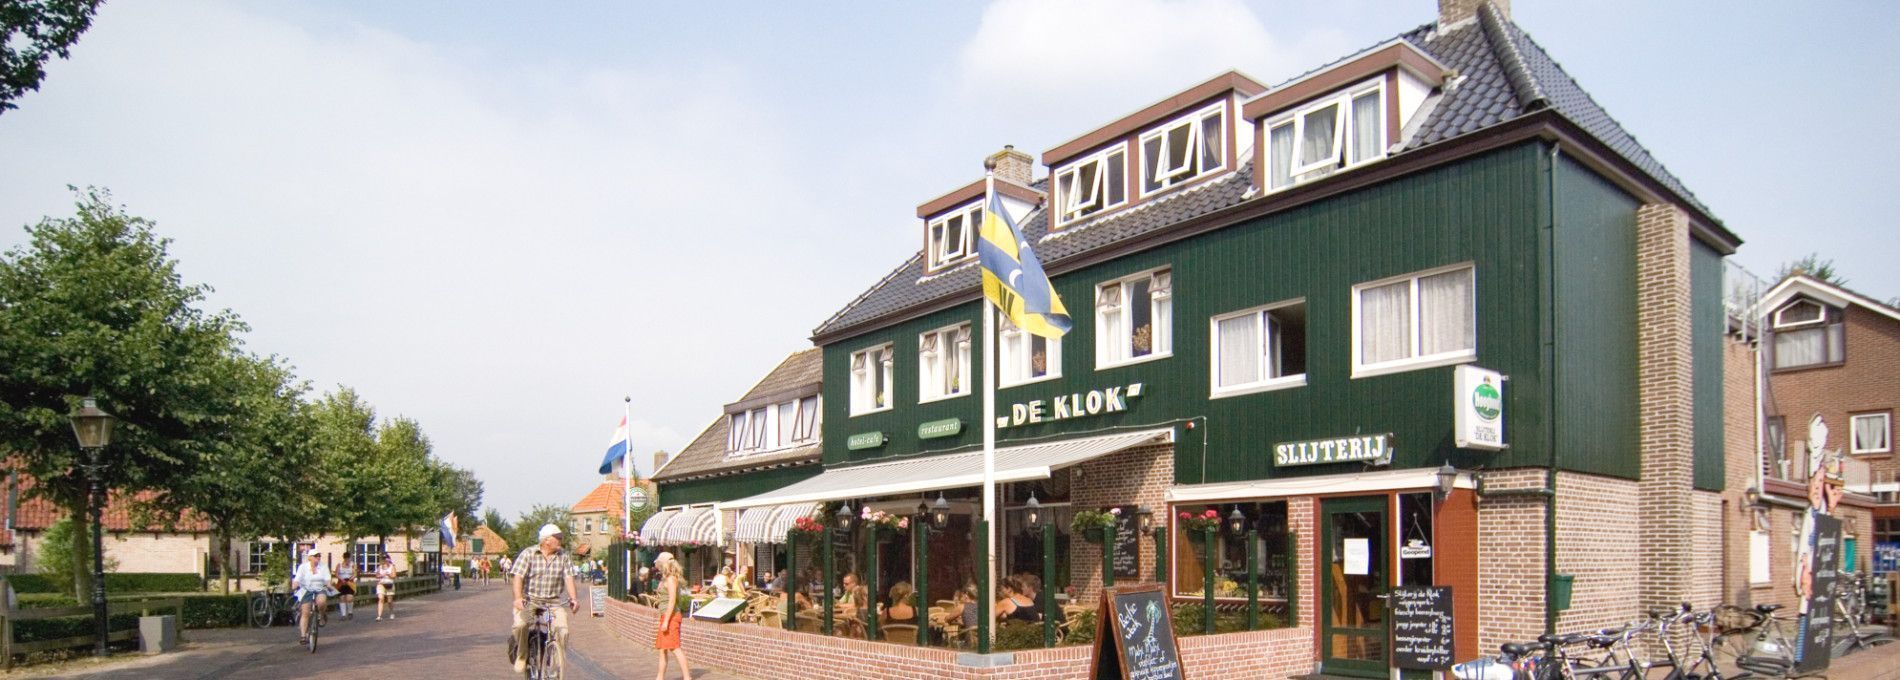 Slijterij Hotel De Klok - VVV Ameland